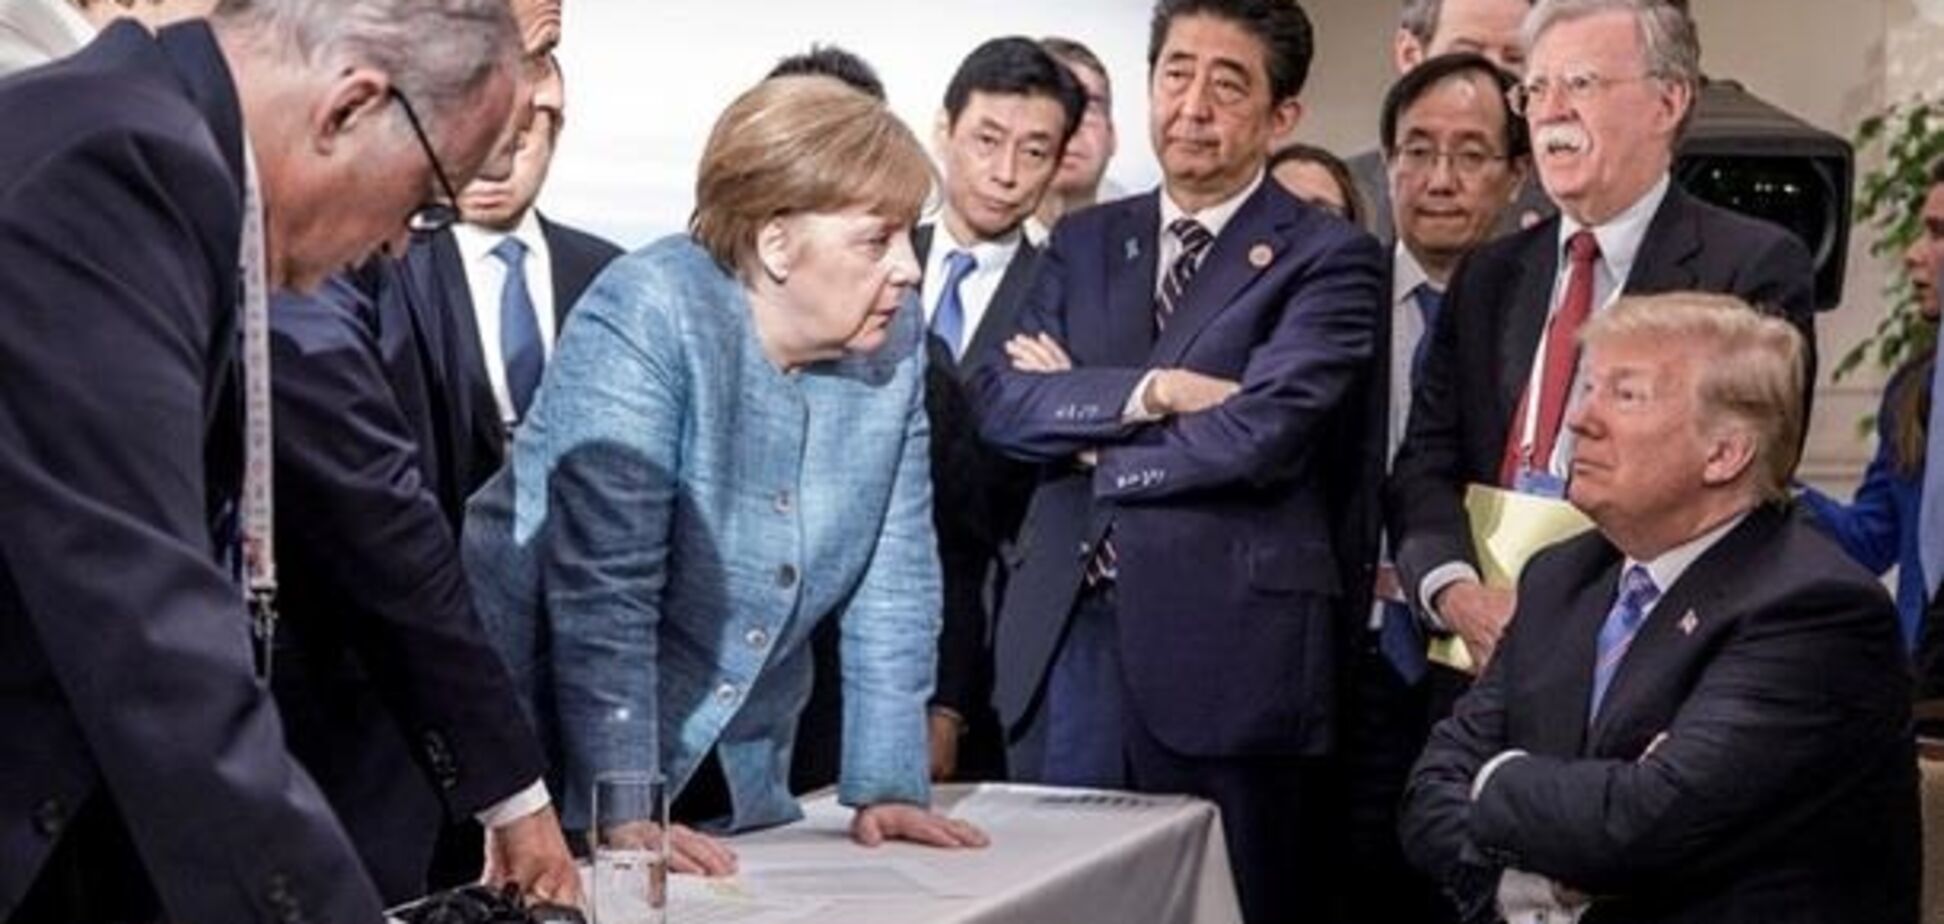 Швырнул конфеты: стало известно о стычке Трампа и Меркель на саммите G7 из-за России